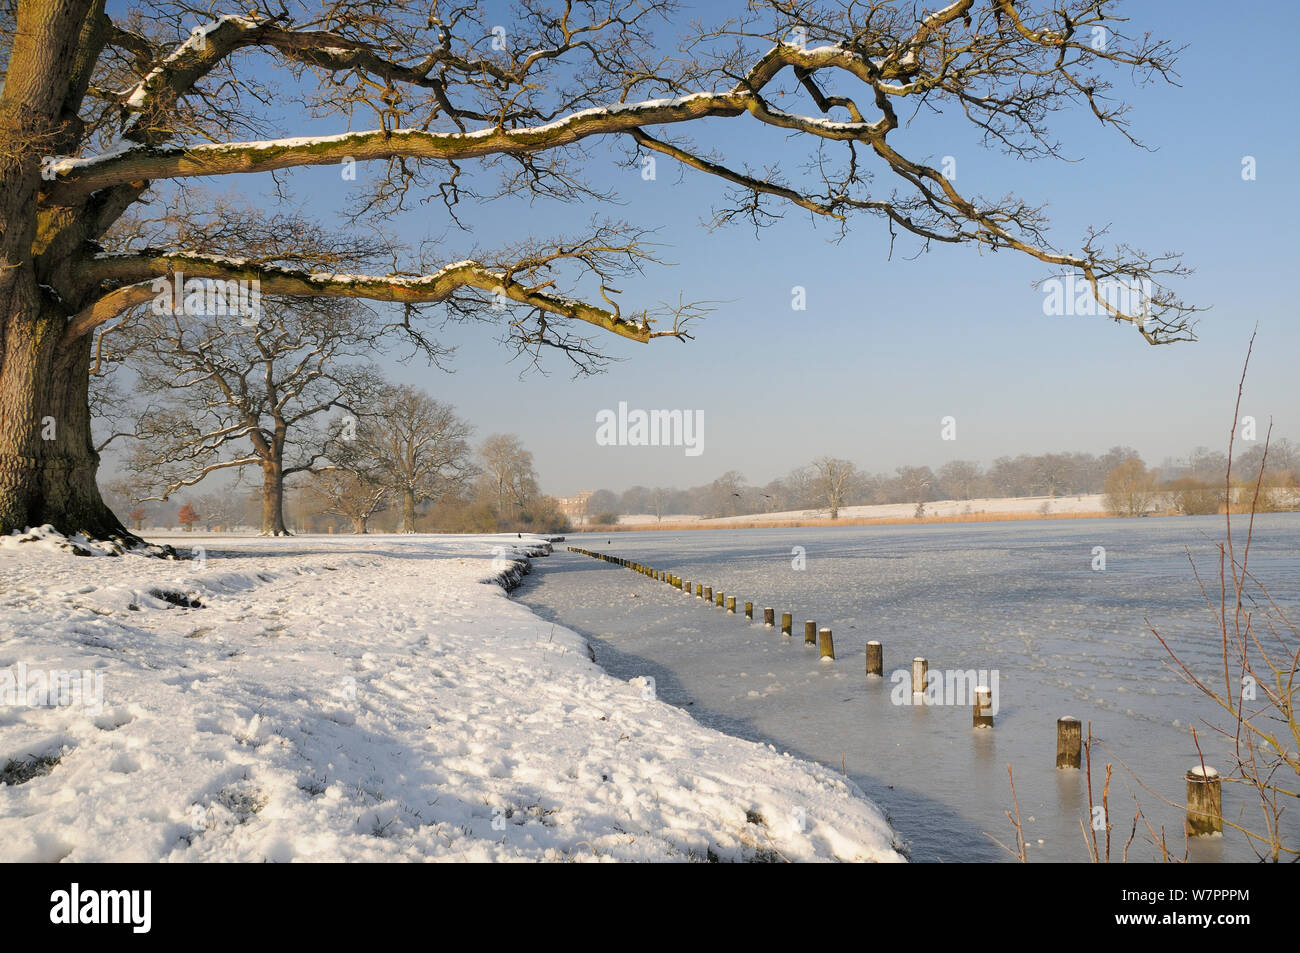 Congelati Corsham lago inglese e alberi di quercia (Quercus robur) in inverno con la Corte a Corsham in background, Wiltshire, Regno Unito, Febbraio 2013 Foto Stock